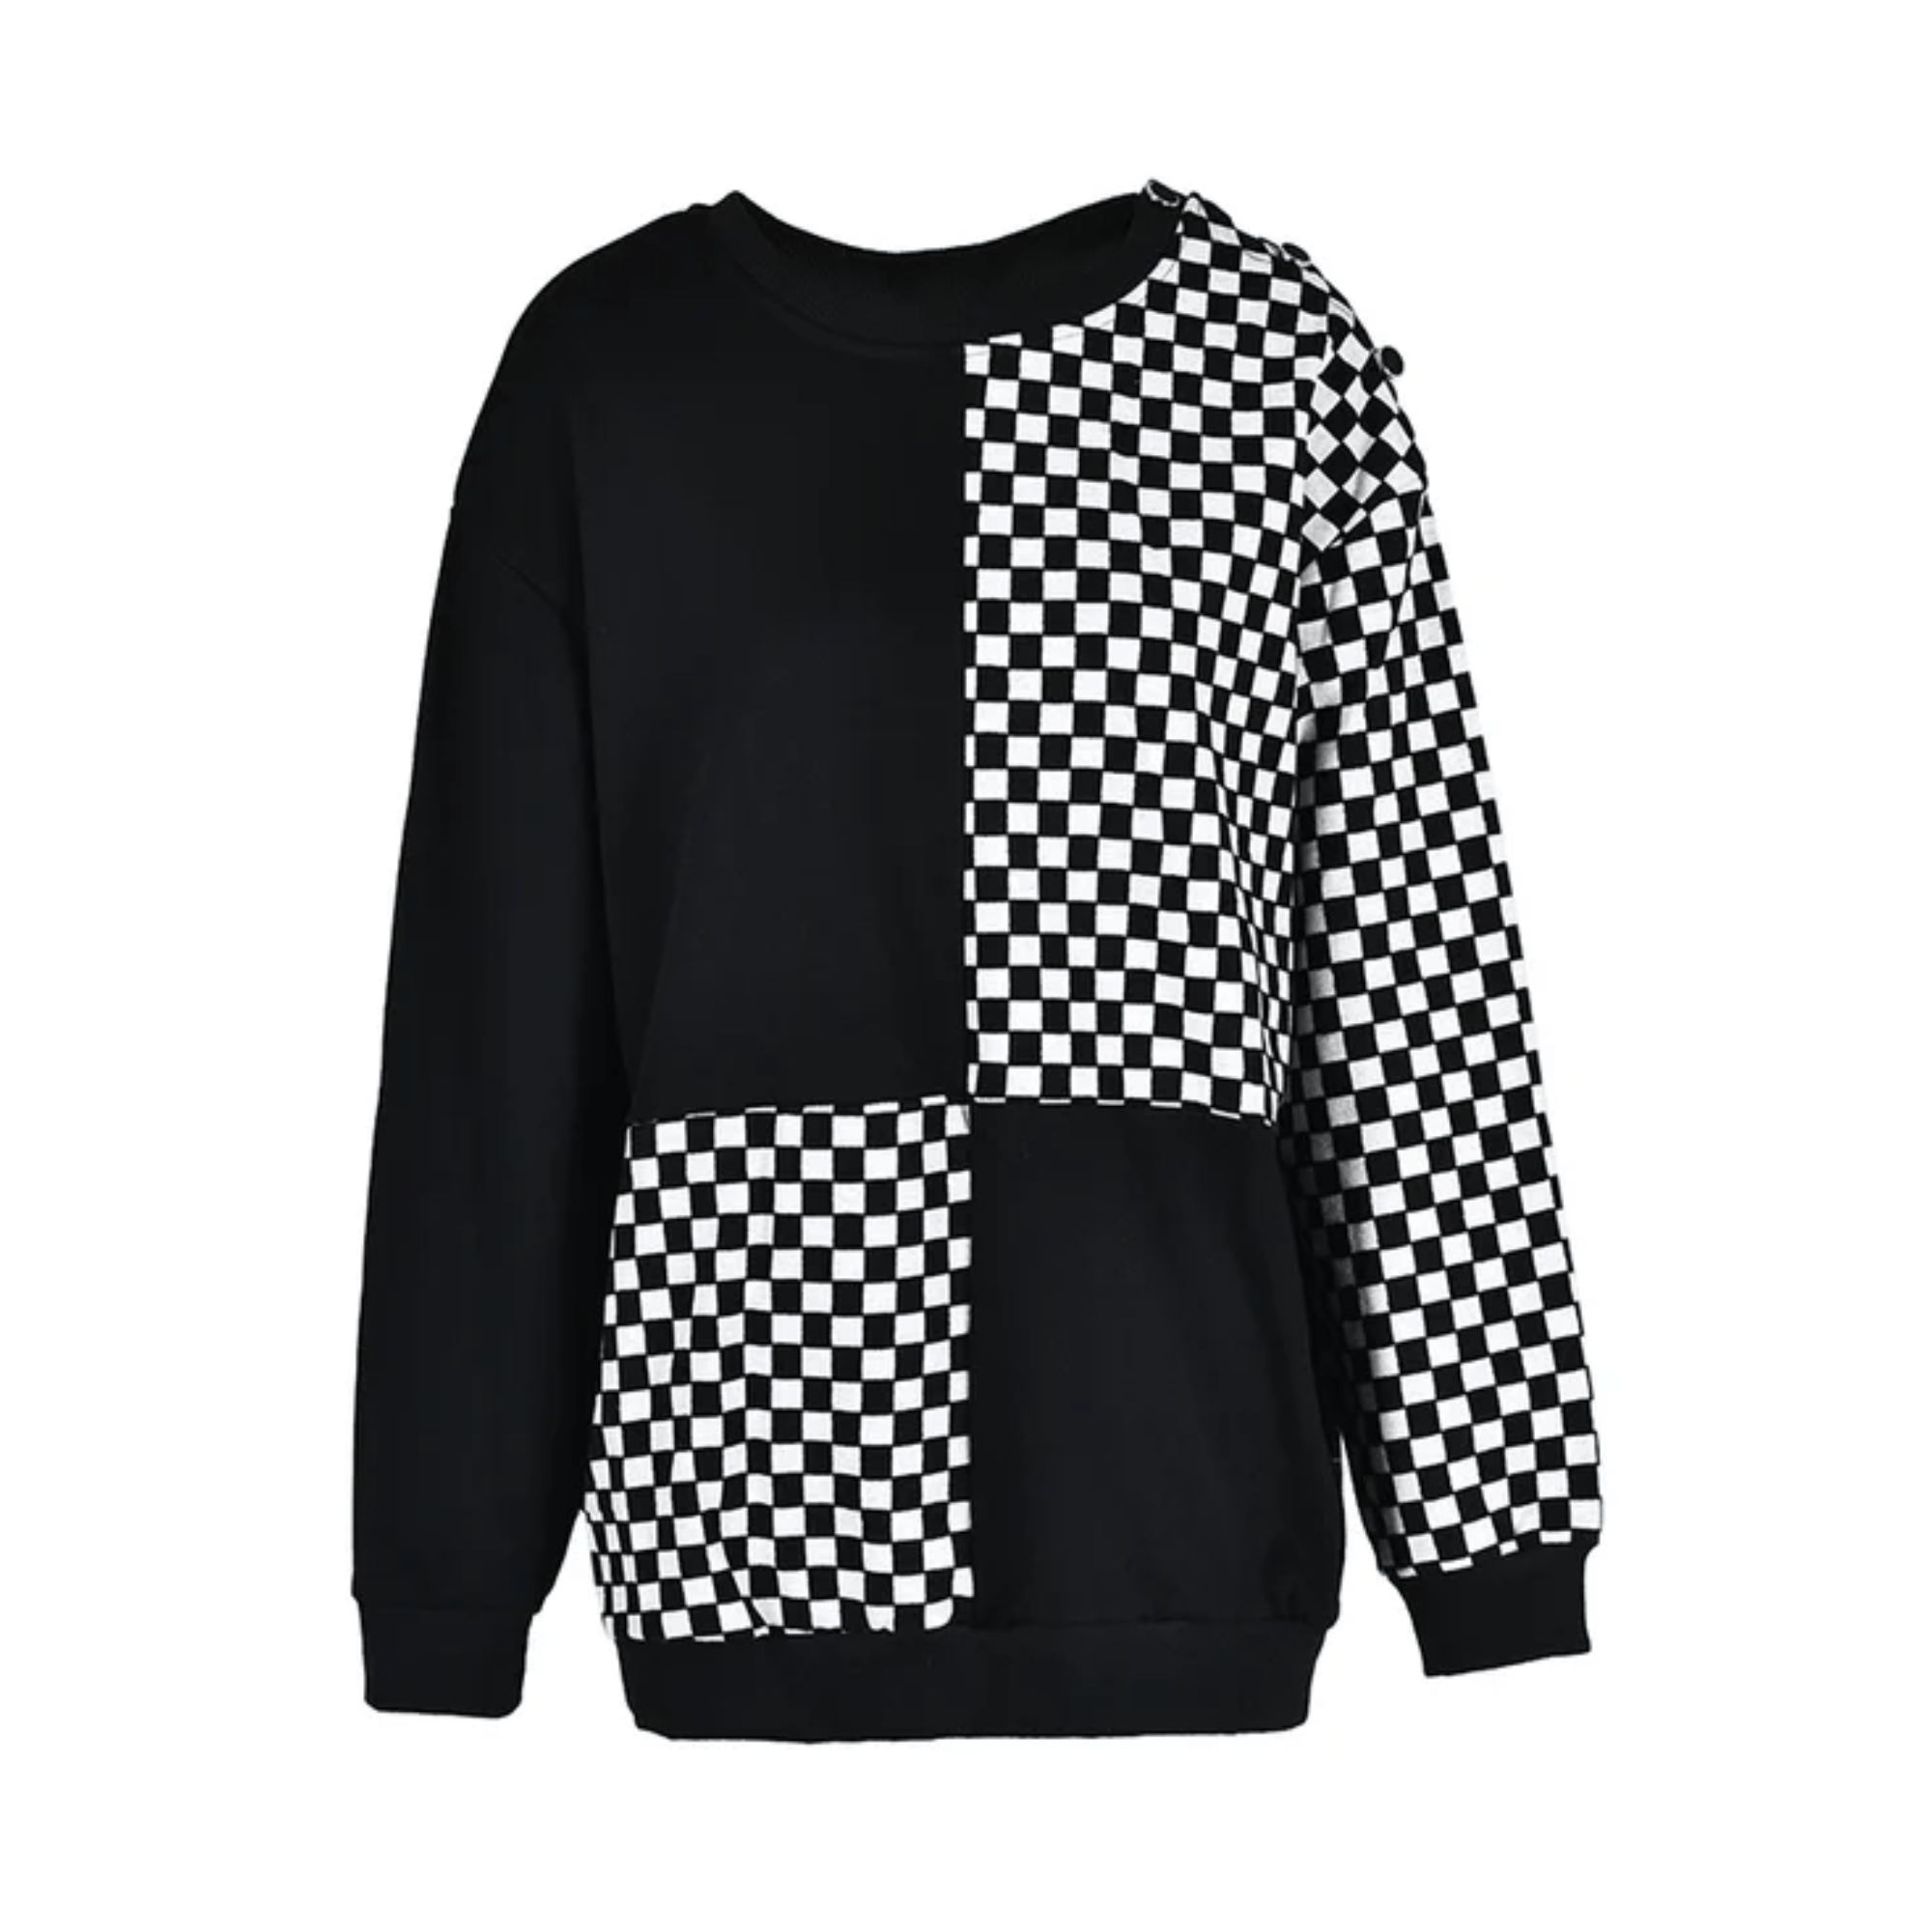 Checker Print Contrast B&W Sweatshirt